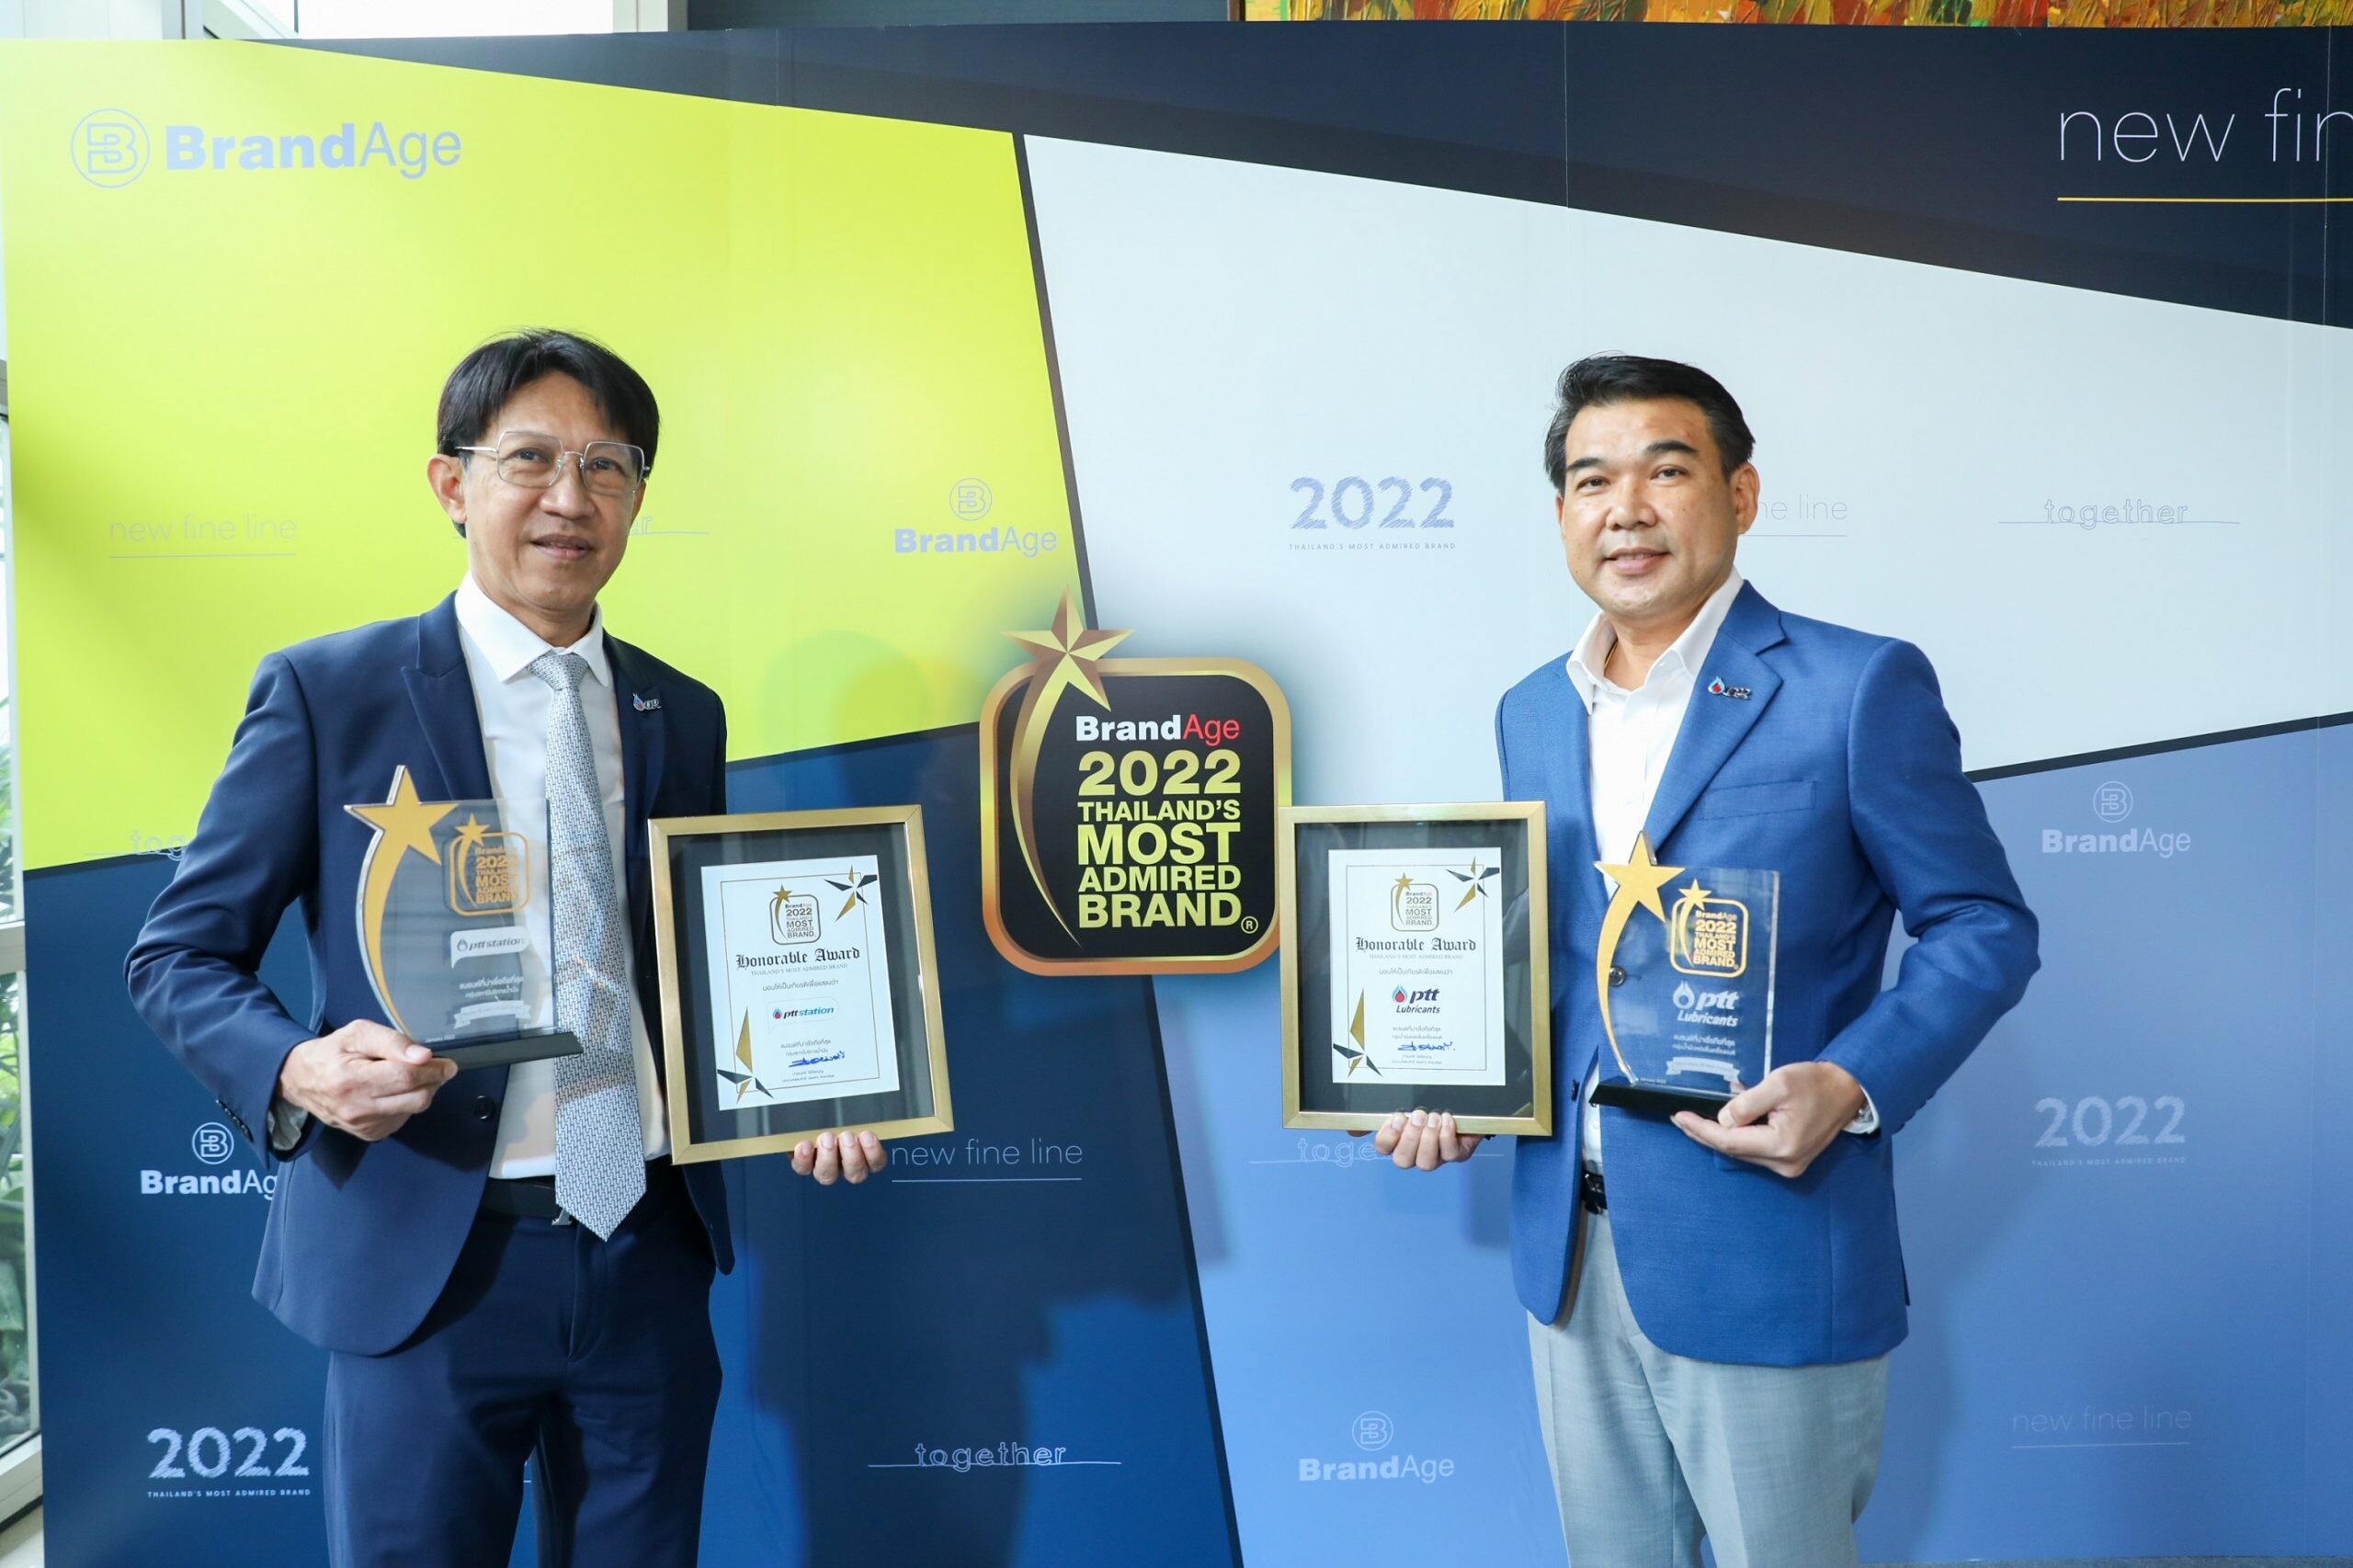 พีทีที สเตชั่น - พีทีที ลูบริแคนท์ส ตอกย้ำความเป็นผู้นำด้าน Mobility คว้ารางวัล Thailand Most Admired Brand 2022 อย่างต่อเนื่อง